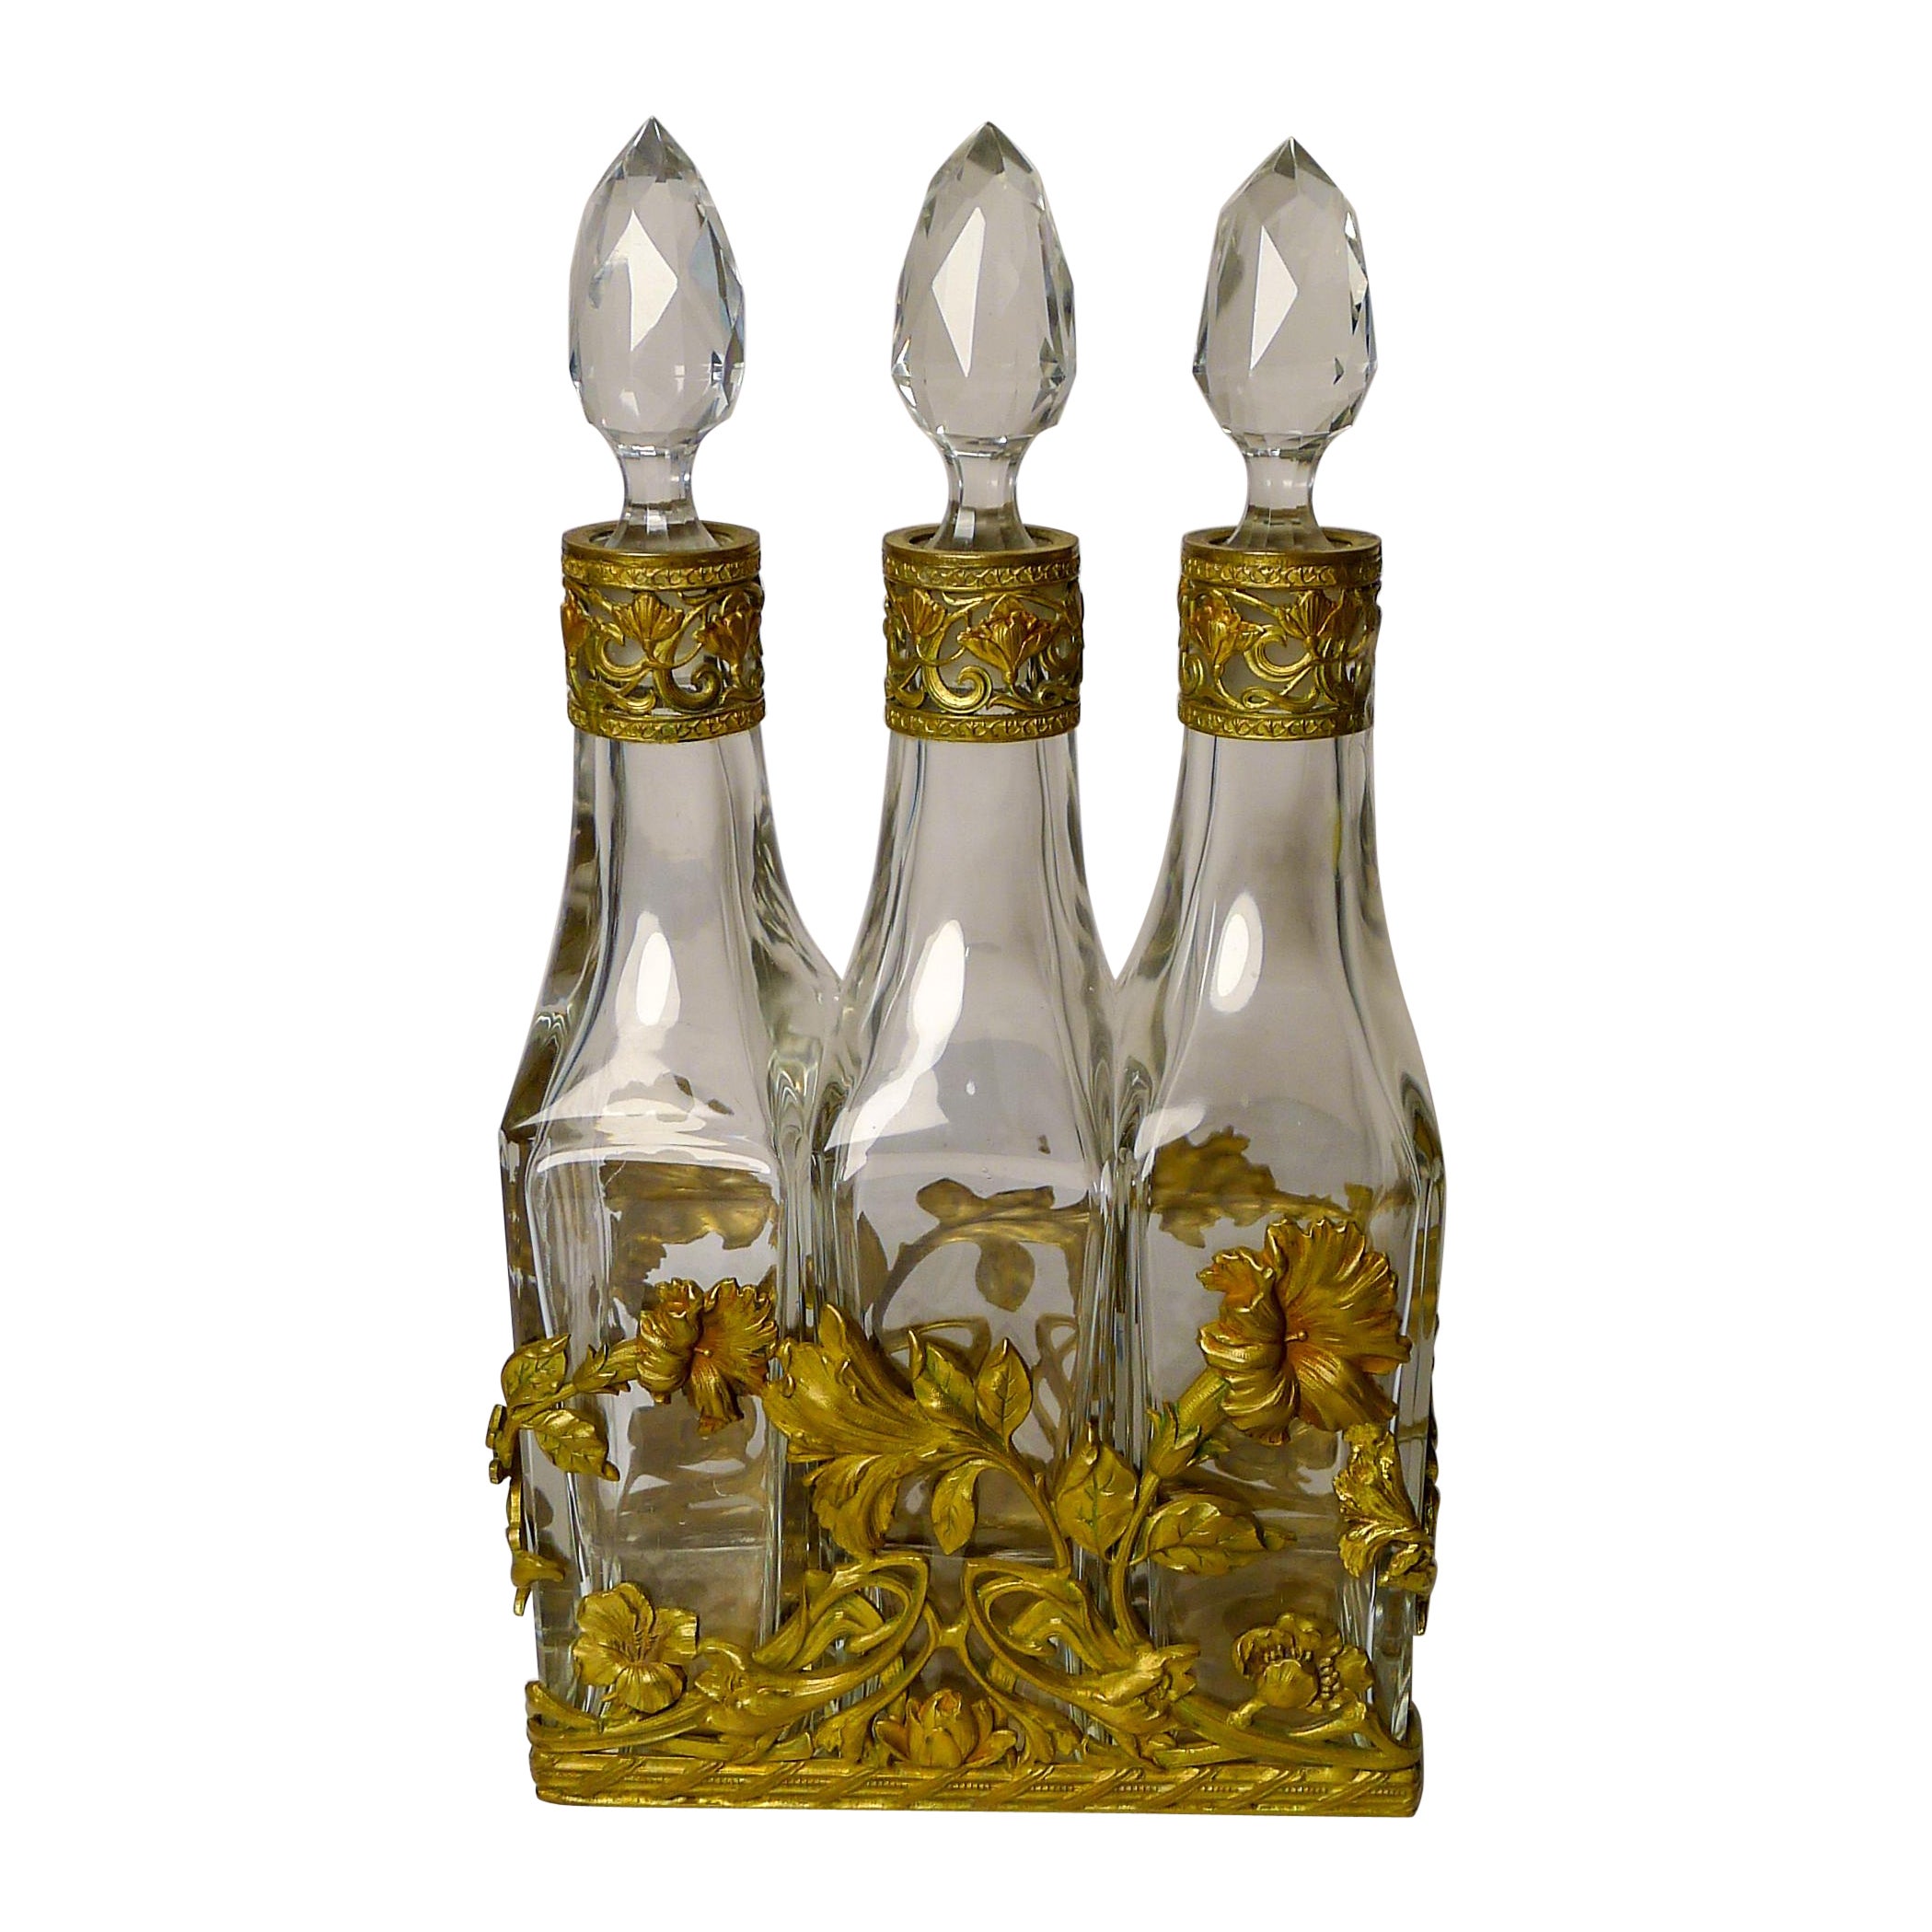 French Art Nouveau Liquor Decanter Set / Perfume Caddy c.1900 For Sale